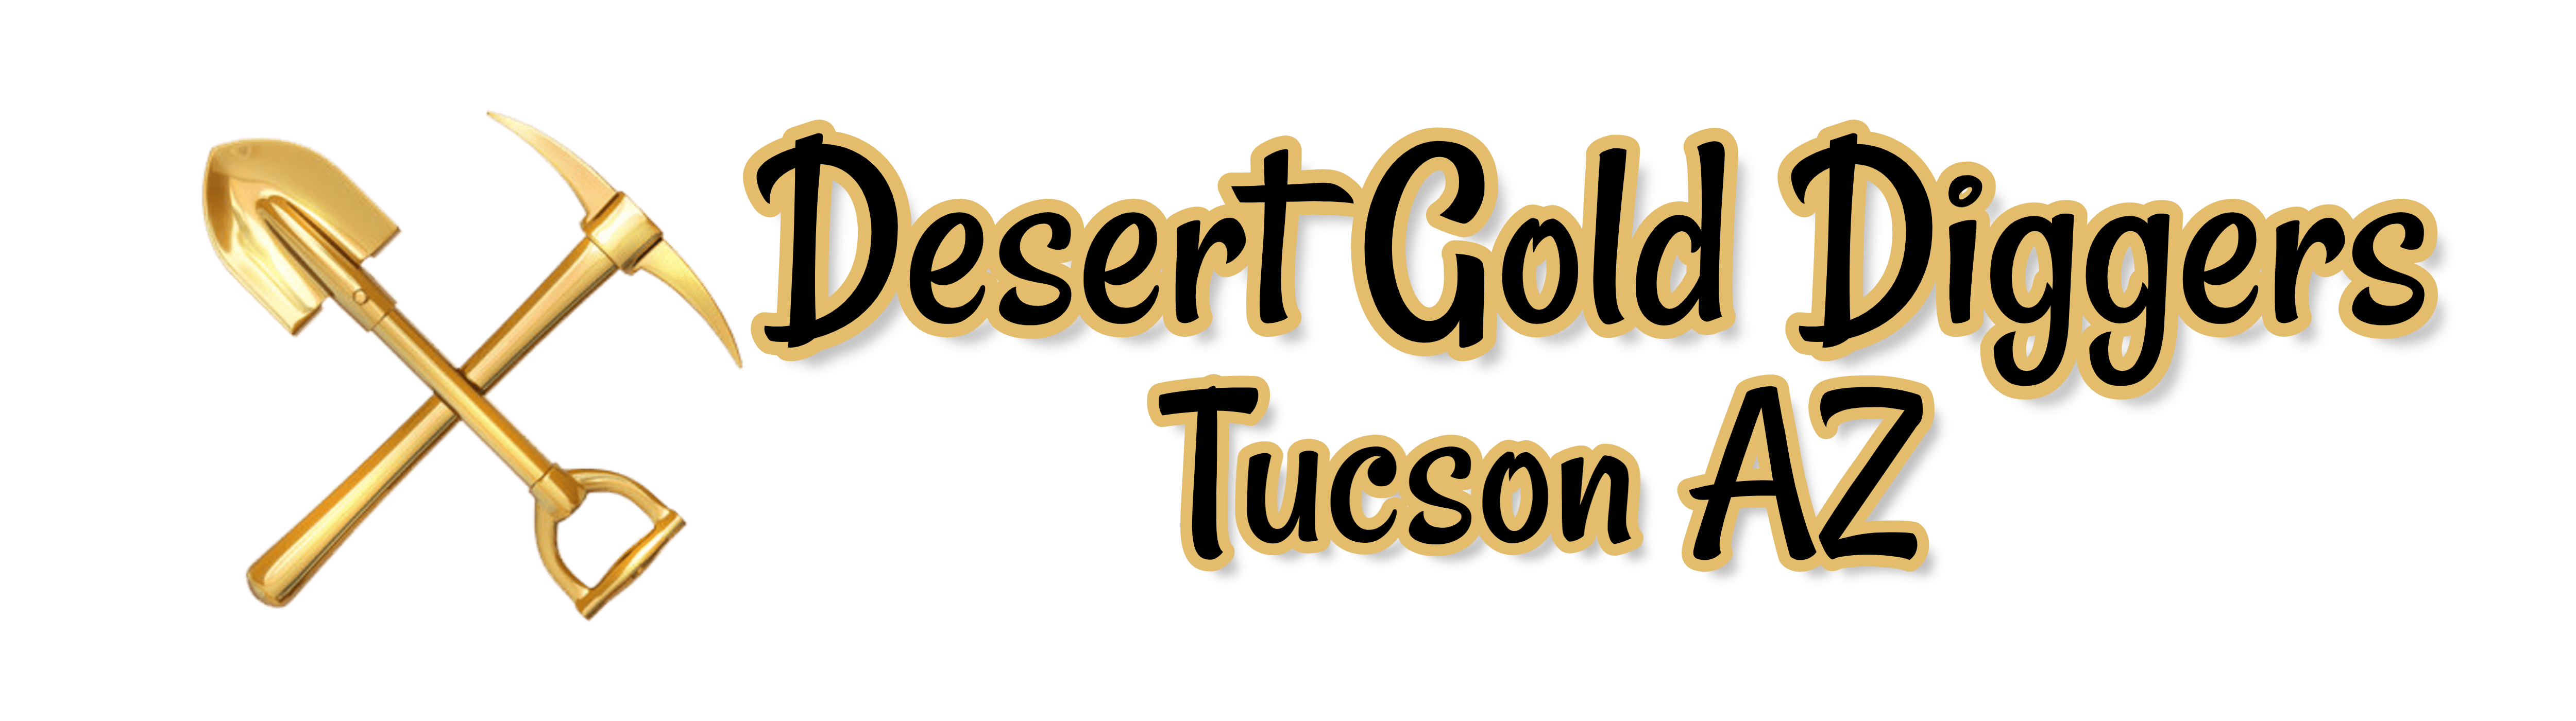 Desert Gold Diggers